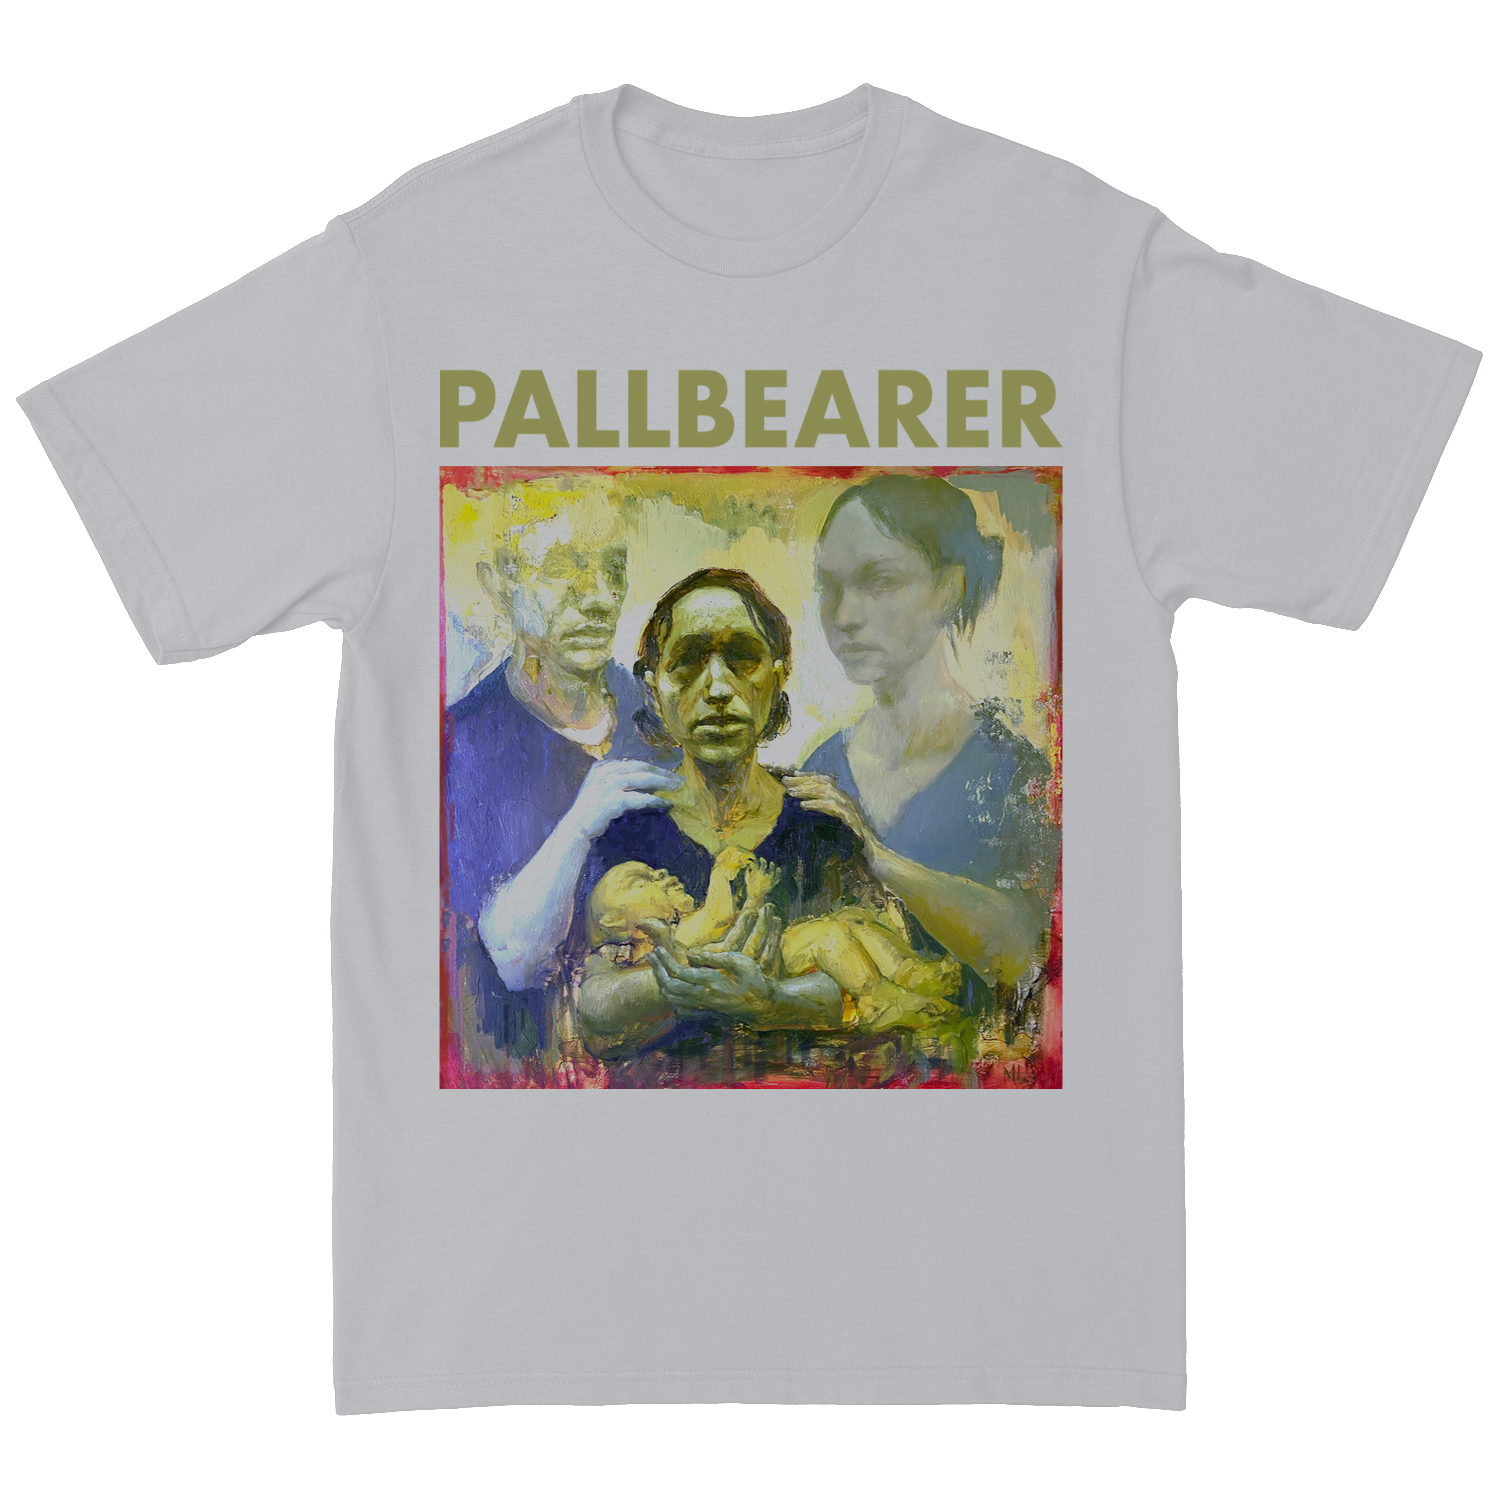 PALLBEARER "Forgotten Days" White T-Shirt (Final Run)